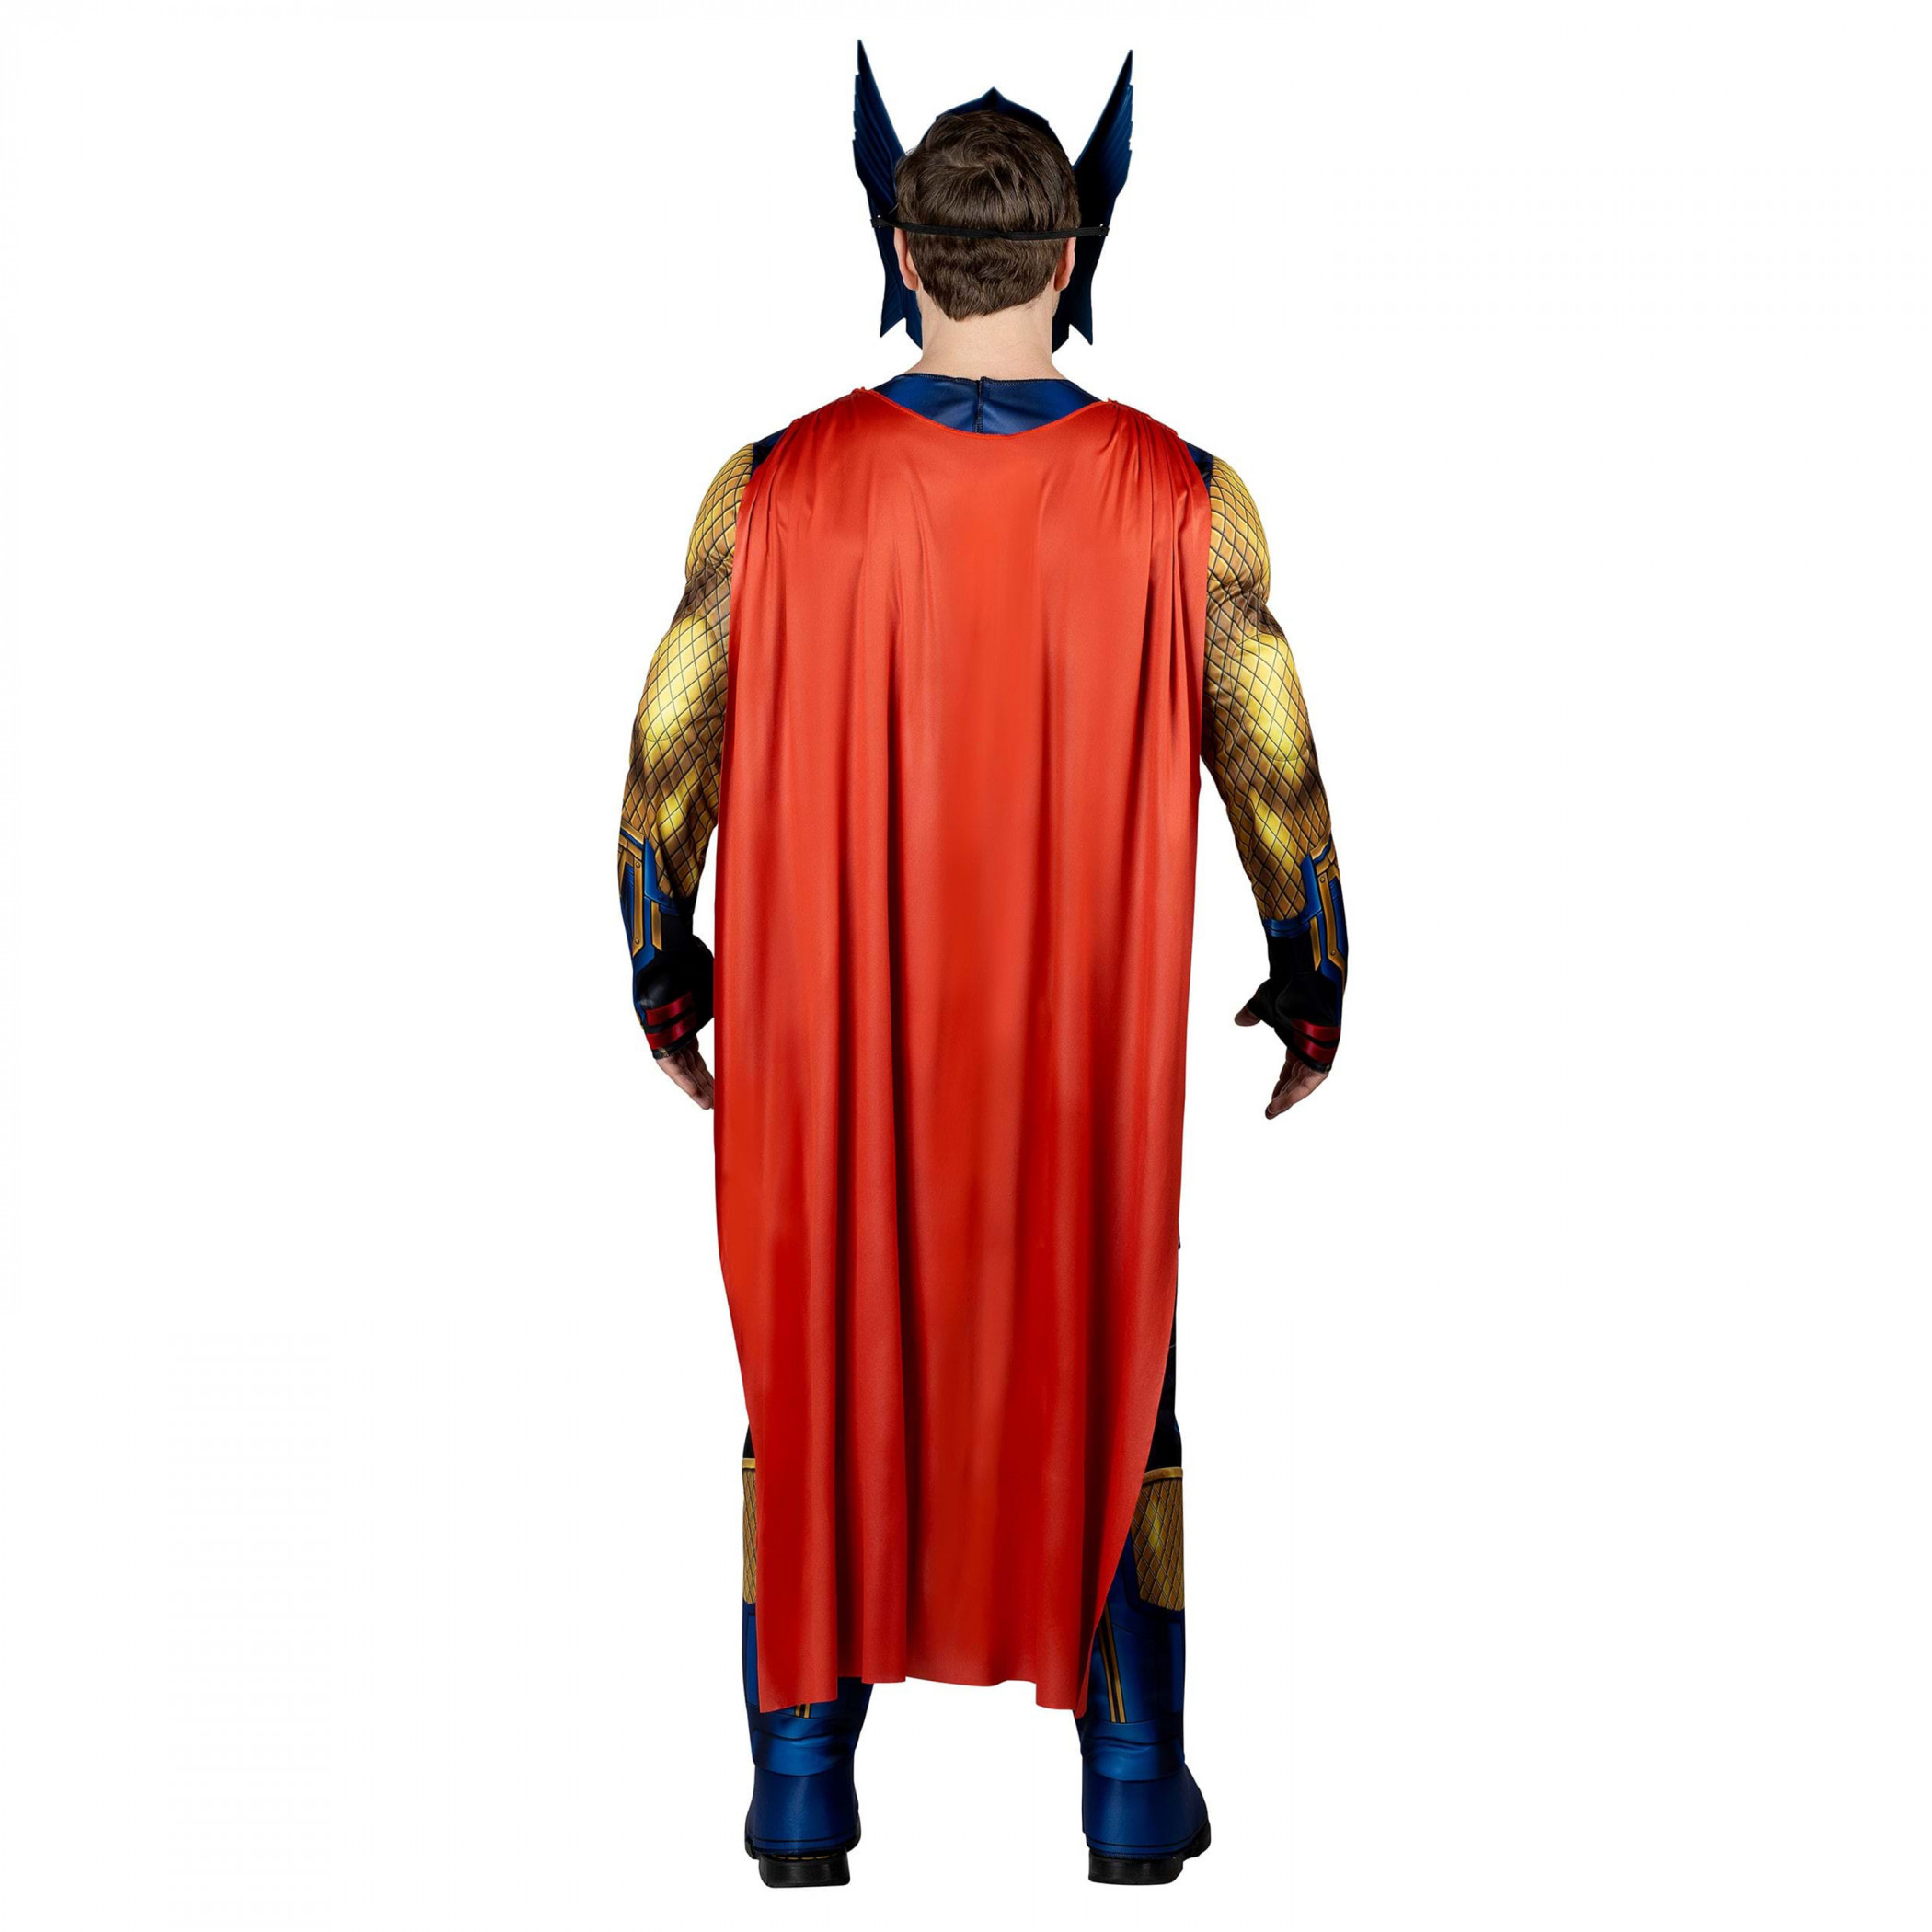 Thor Suit Men's Qualux Foam Costume with Cape